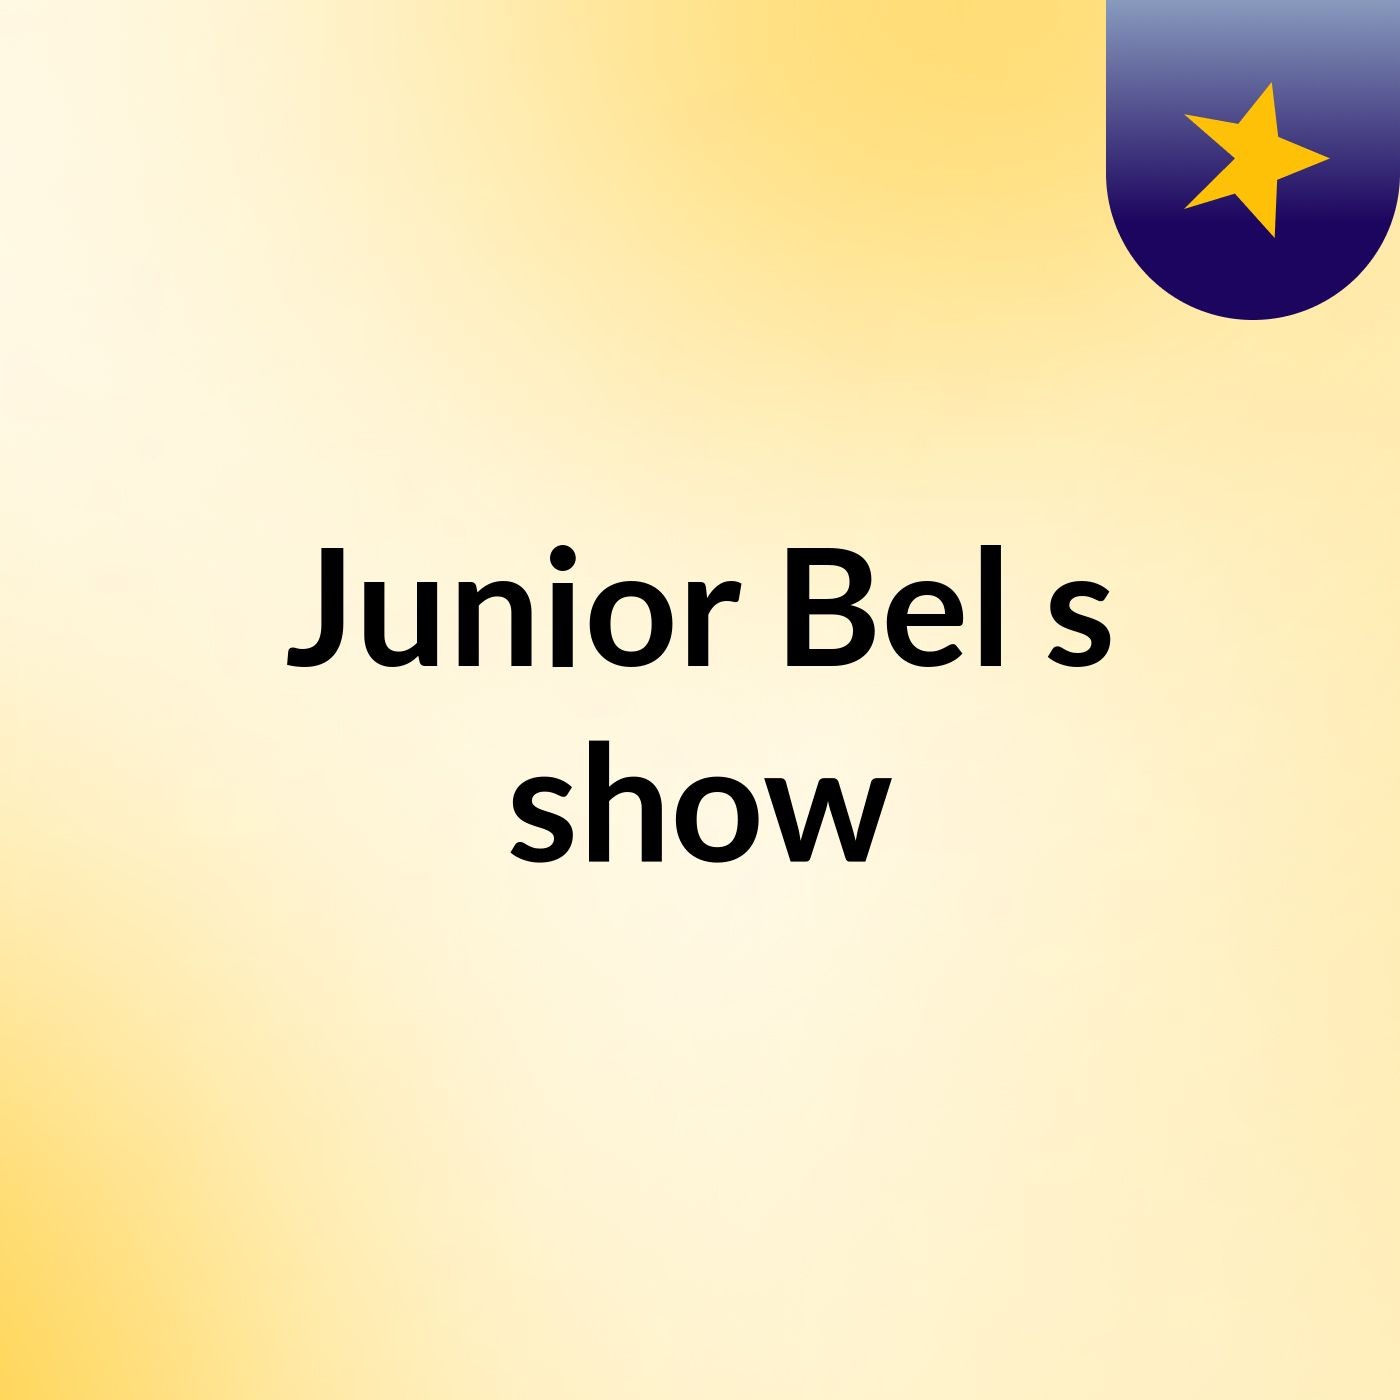 Junior Bel's show